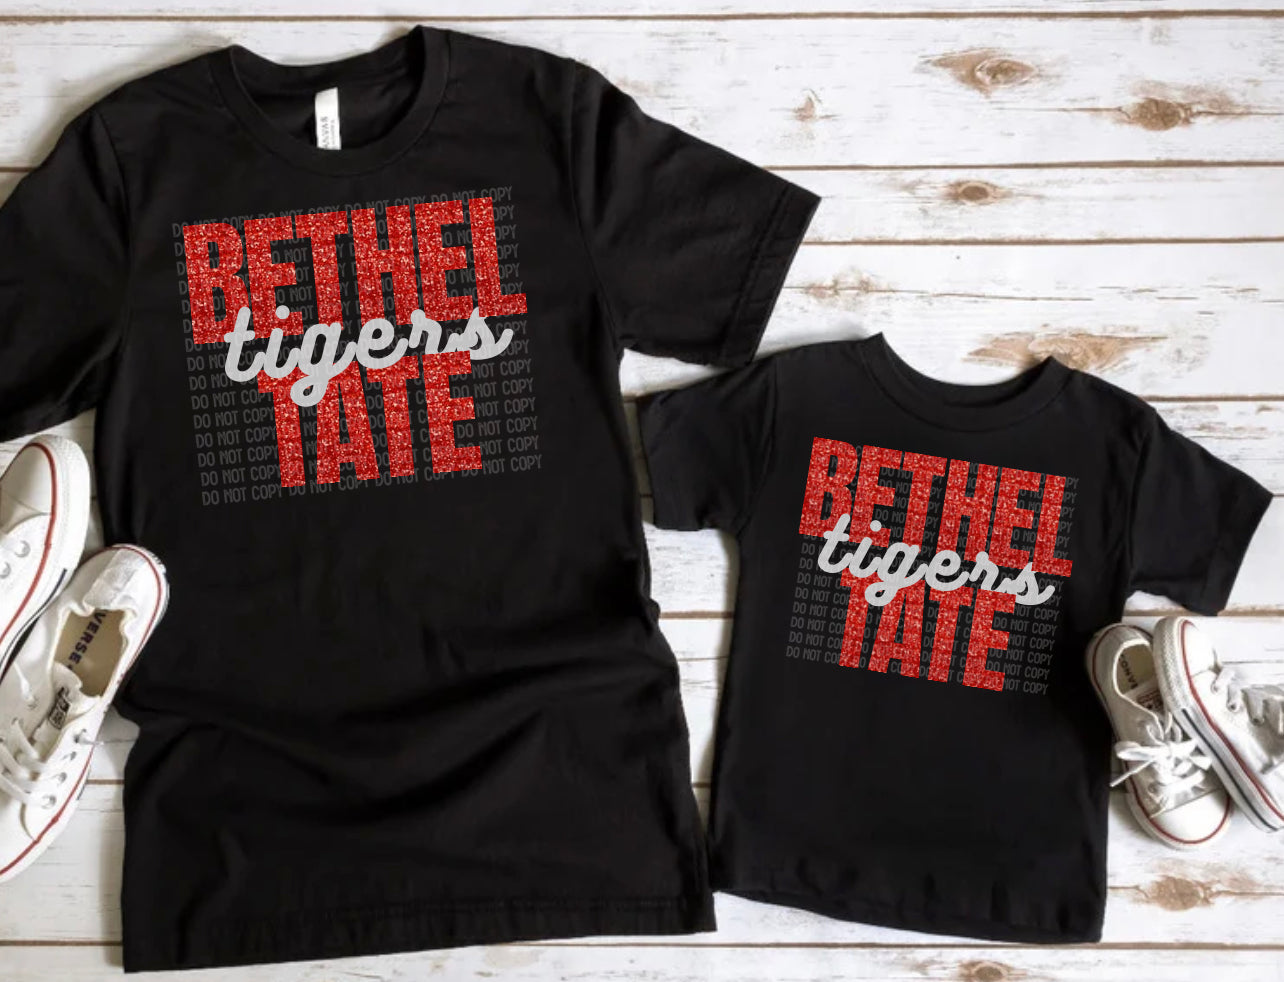 Bethel-Tate Tigers Glitter